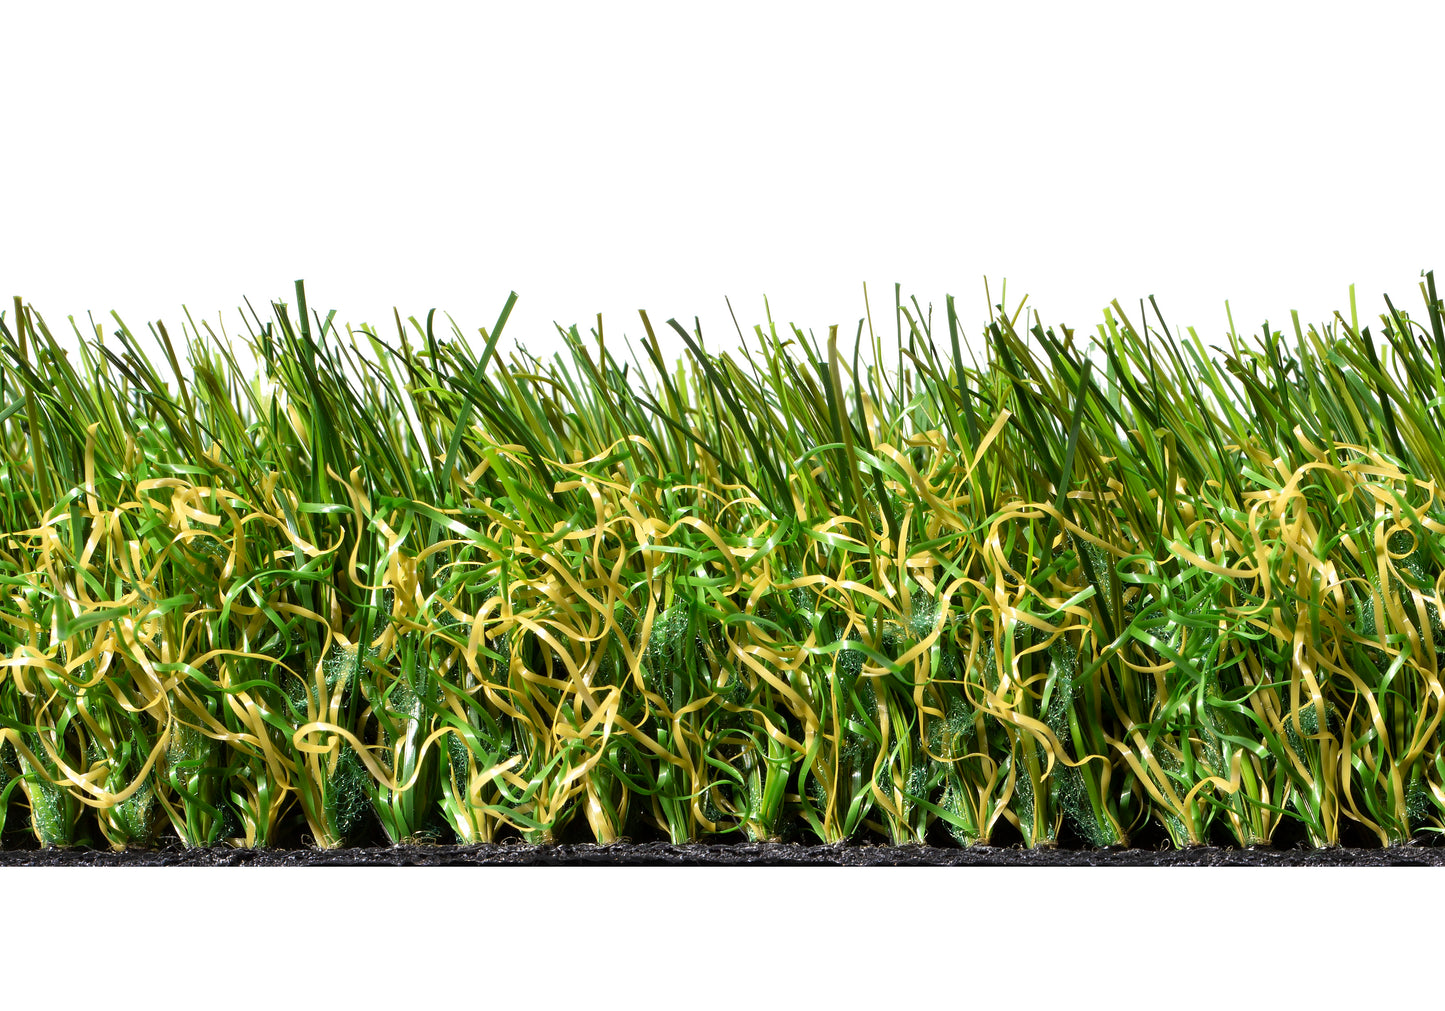 Vienna 40mm Artificial Grass